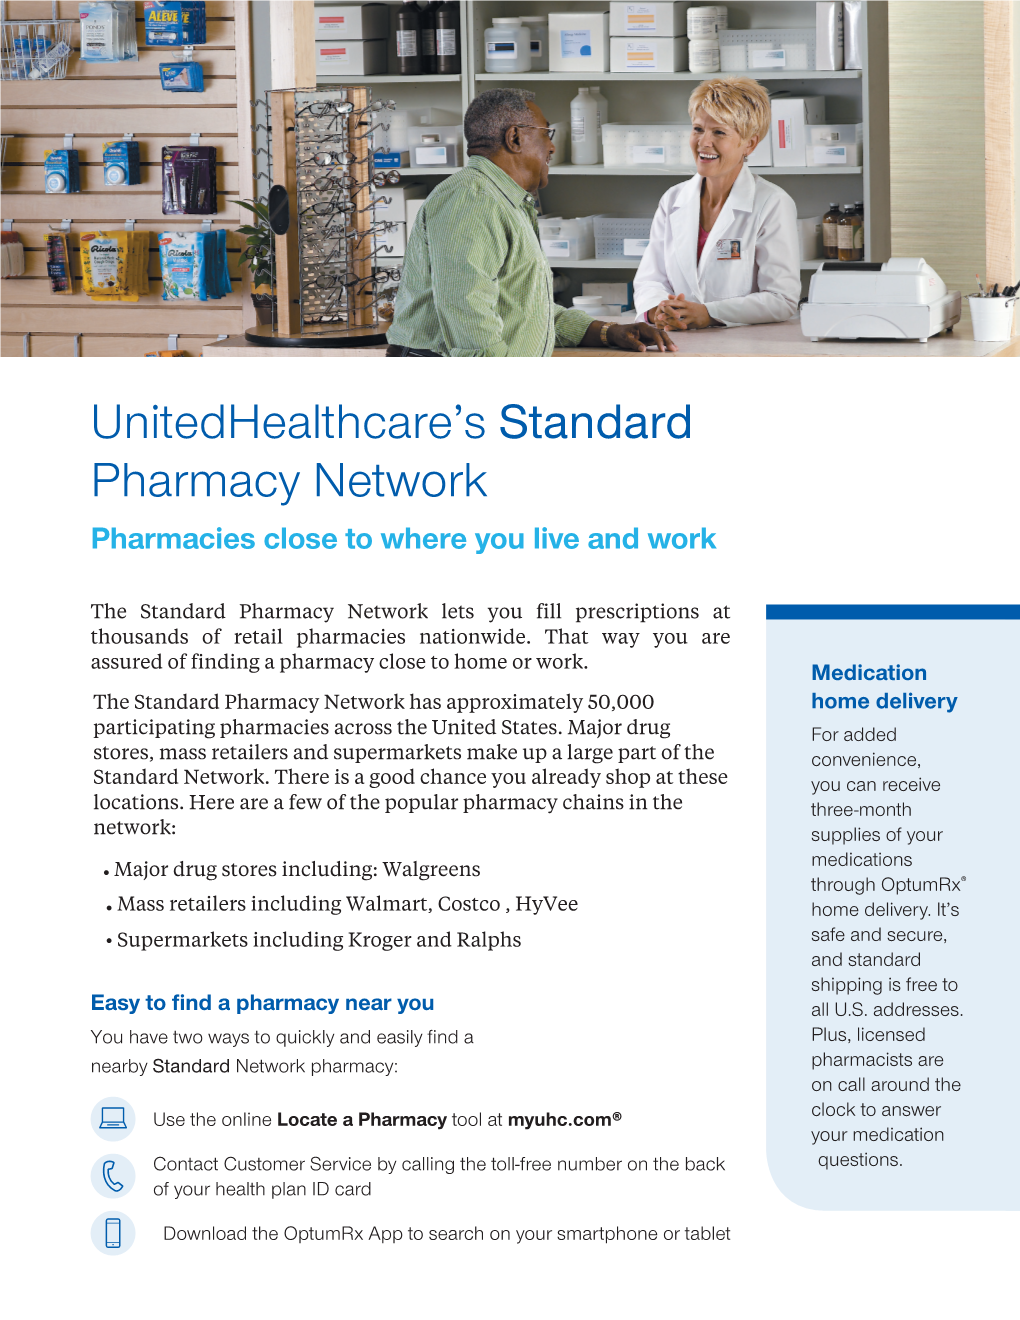 Unitedhealthcare's Standard Pharmacy Network